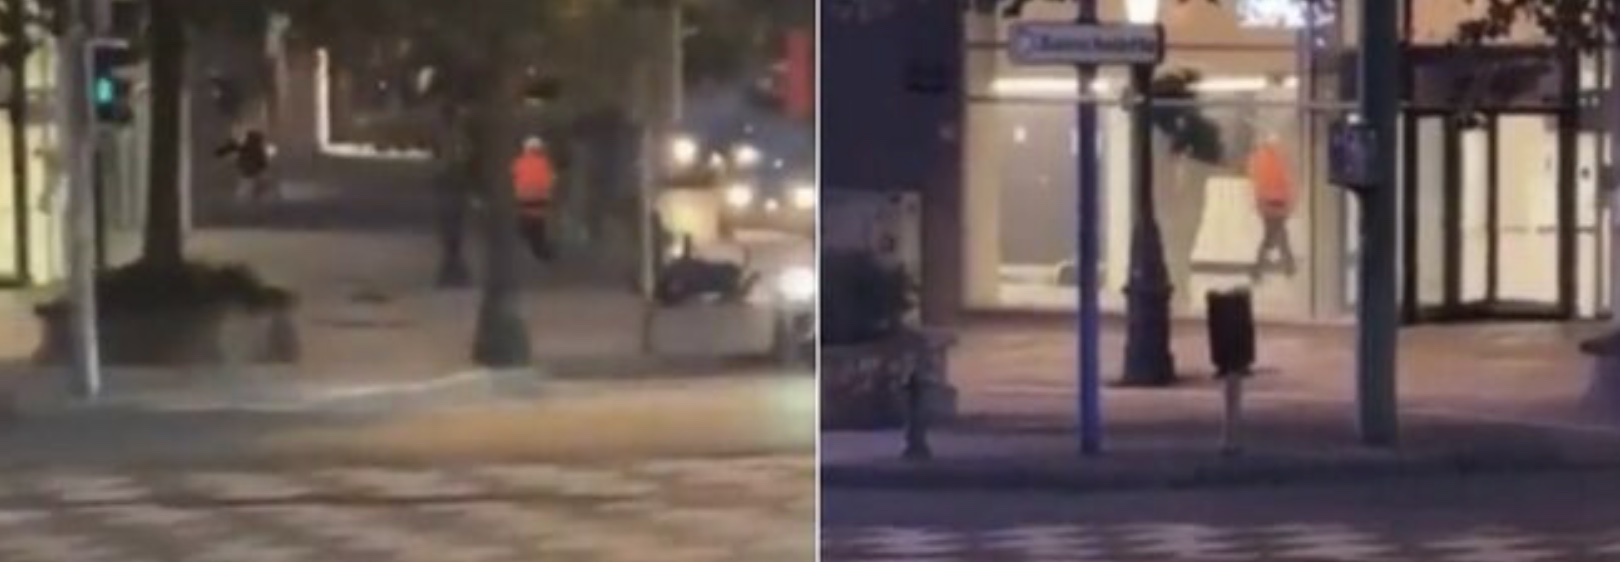 Tiroteo en Bruselas, dos muertos y un herido: seguimos la pista terrorista